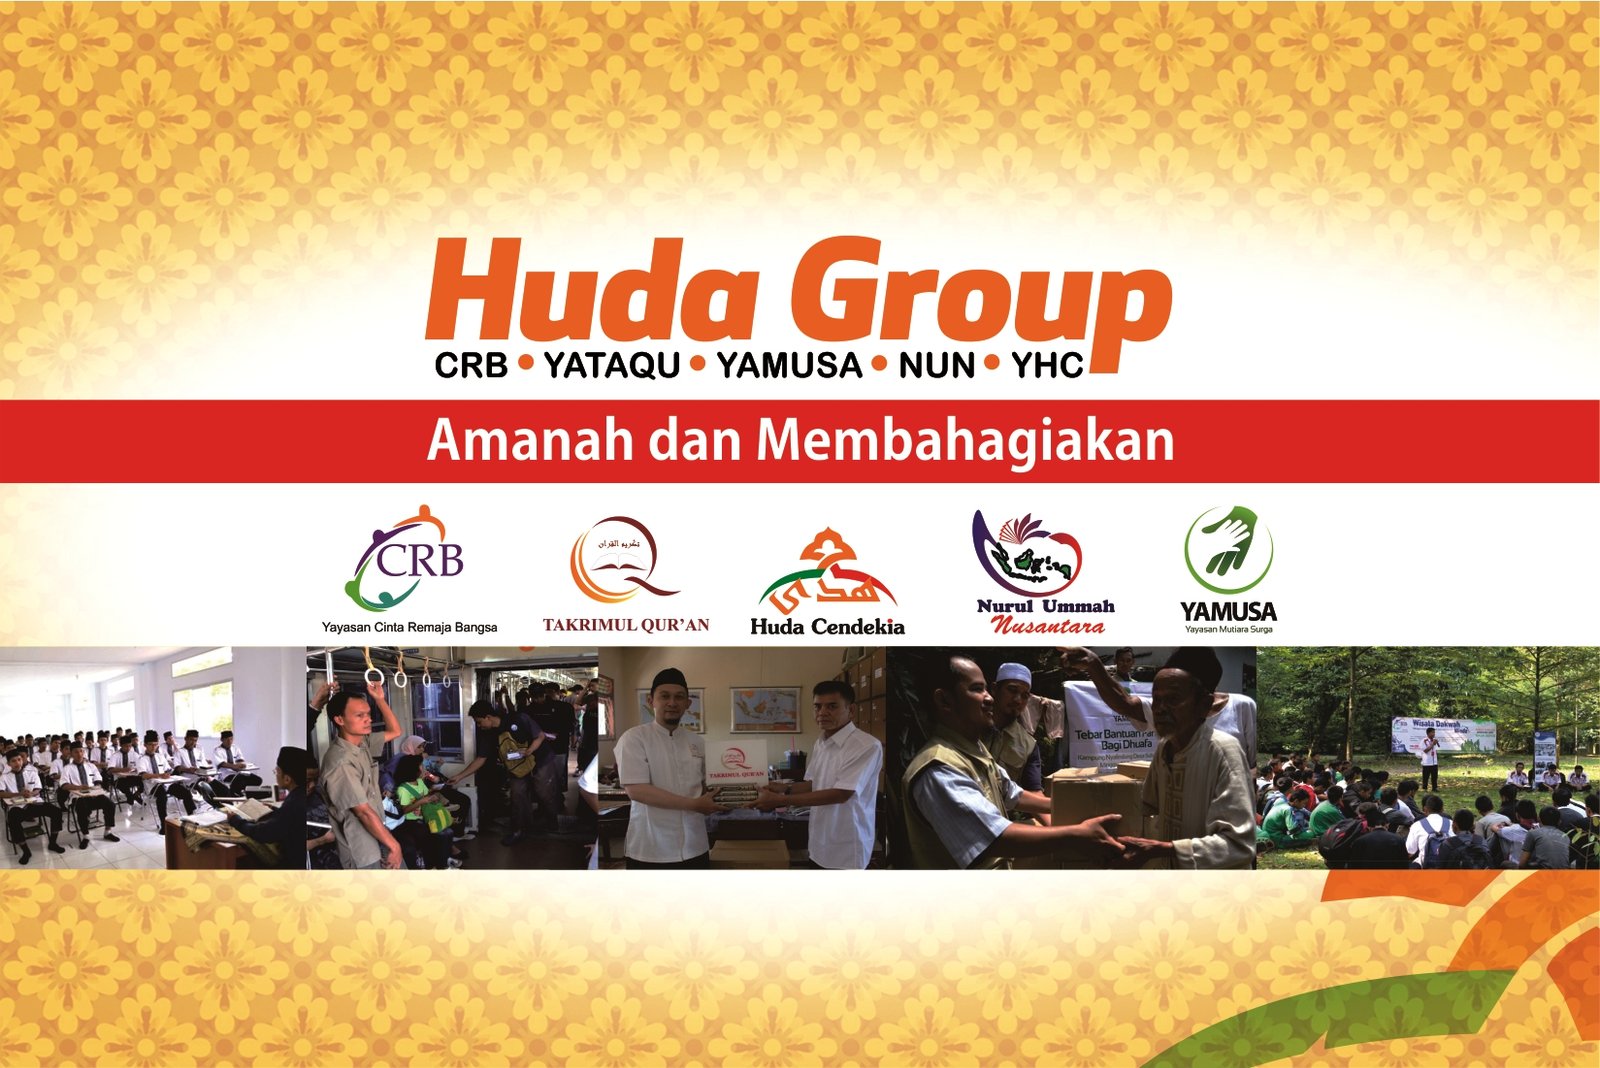 Banner Huda Group Yayasan Huda Cendekia